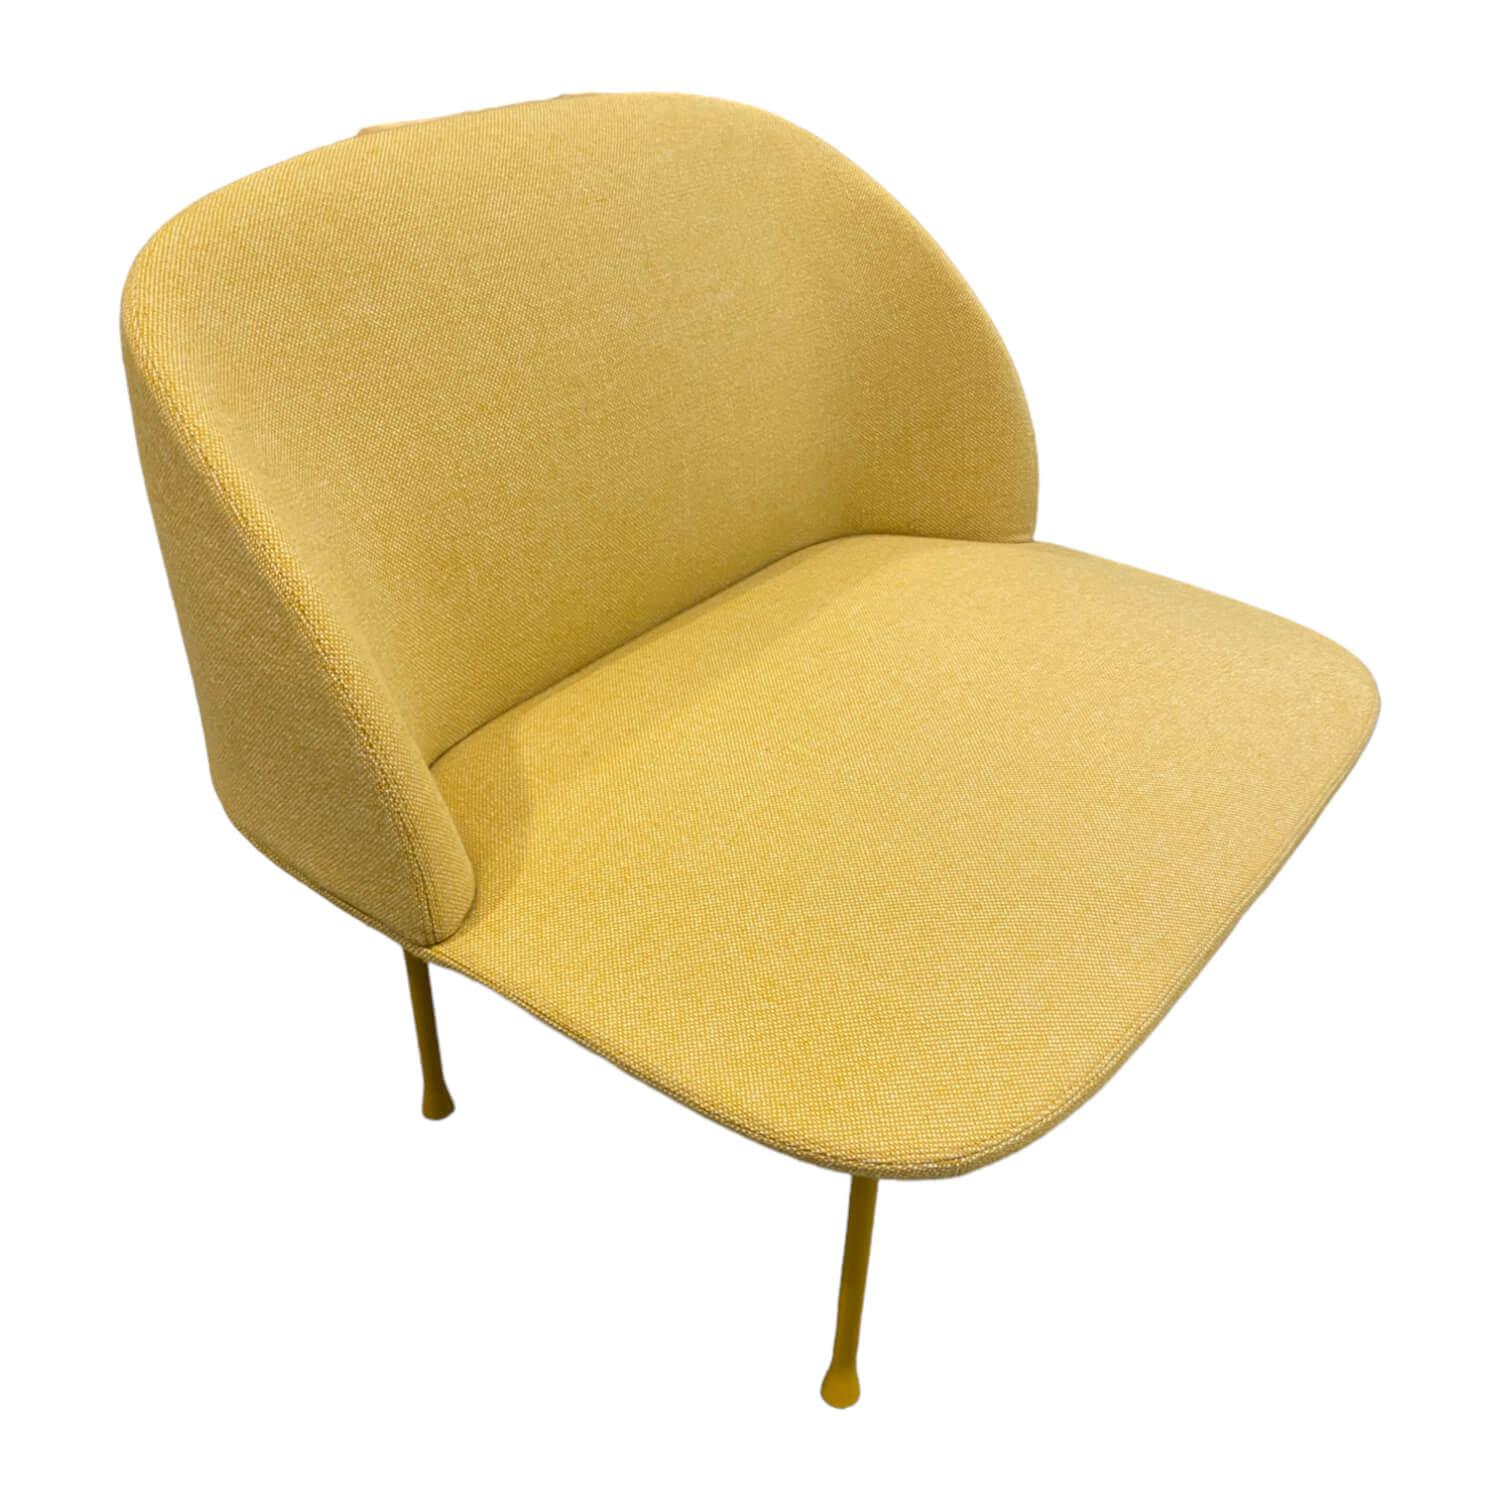 Sessel Oslo Lounge Chair Stoff Steelcut Gelb Gestell Metall Gelb